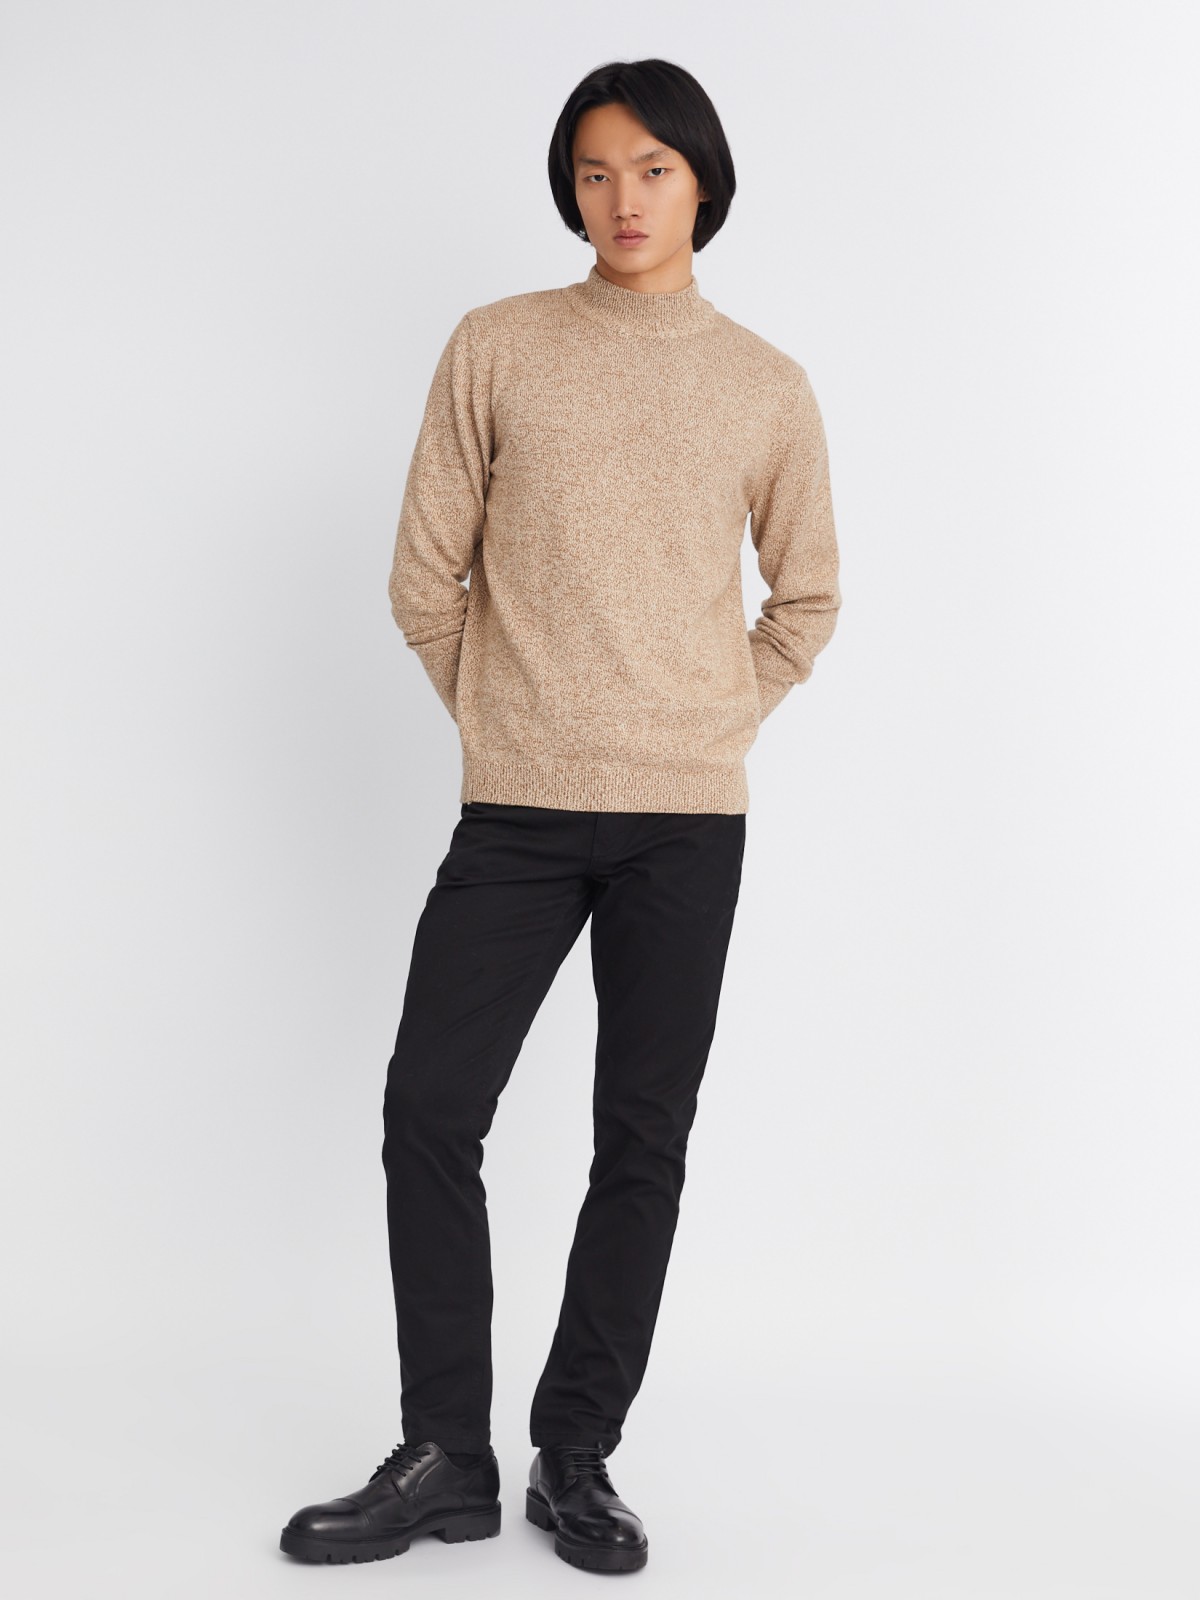 Вязаный свитер из хлопка с воротником-полустойкой и длинным рукавом zolla 012346183043, цвет бежевый, размер S - фото 2